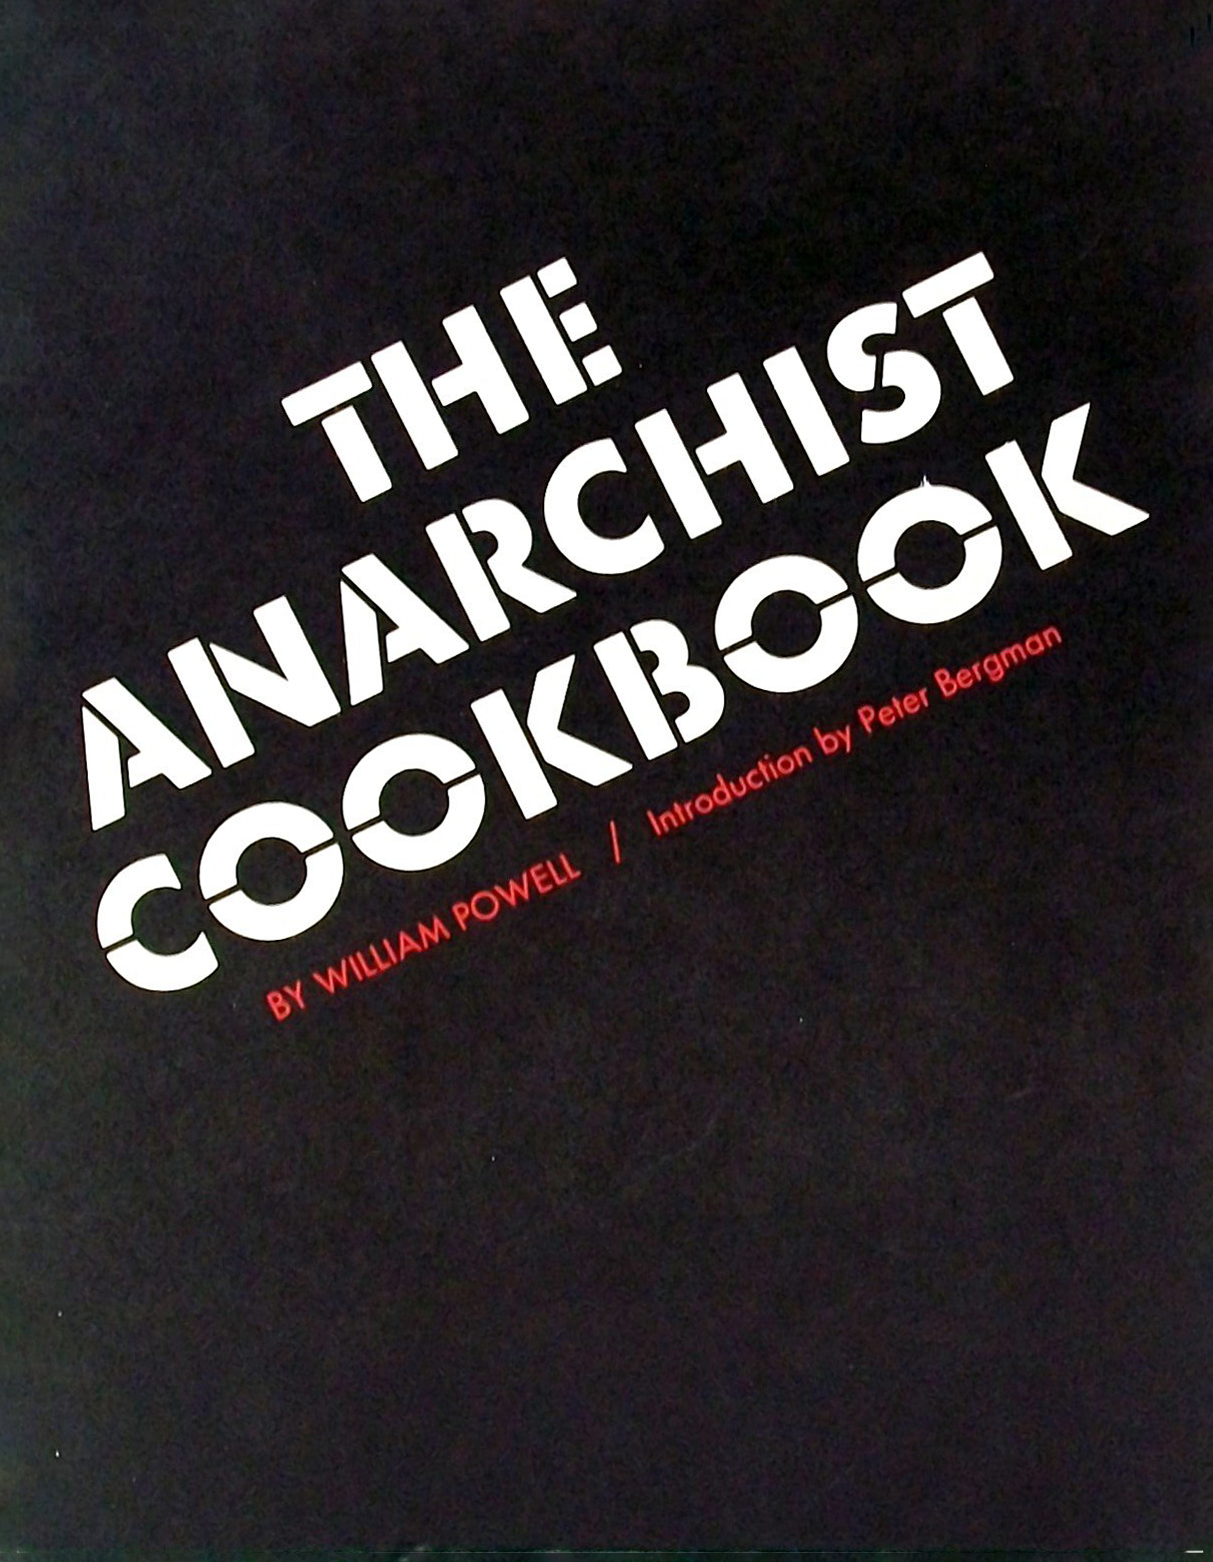 The Anarchist Handbook